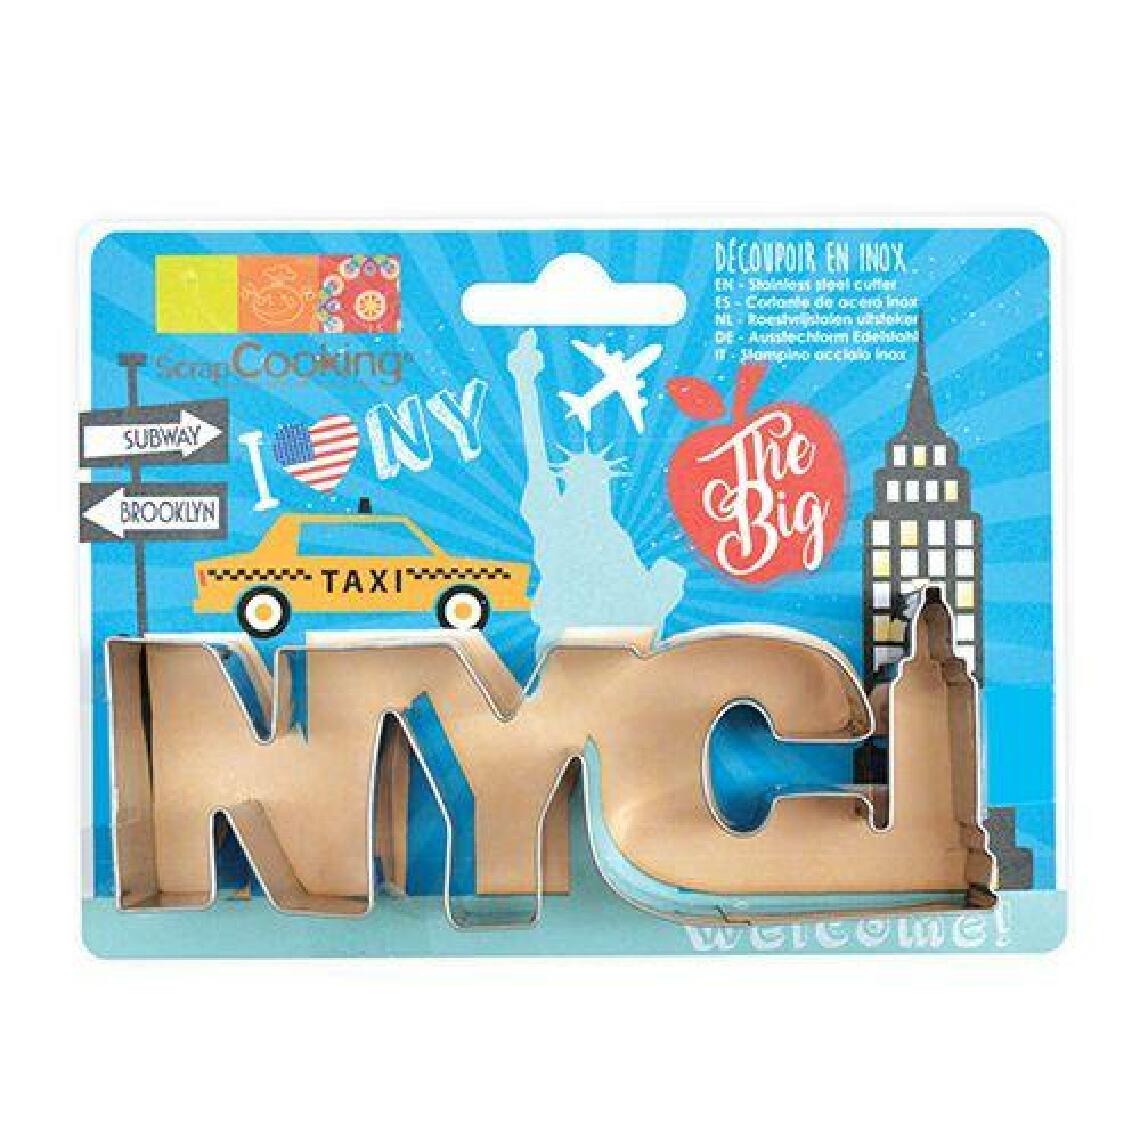 Scrapcooking - Découpoir à biscuits en inox - New-York - Kits créatifs